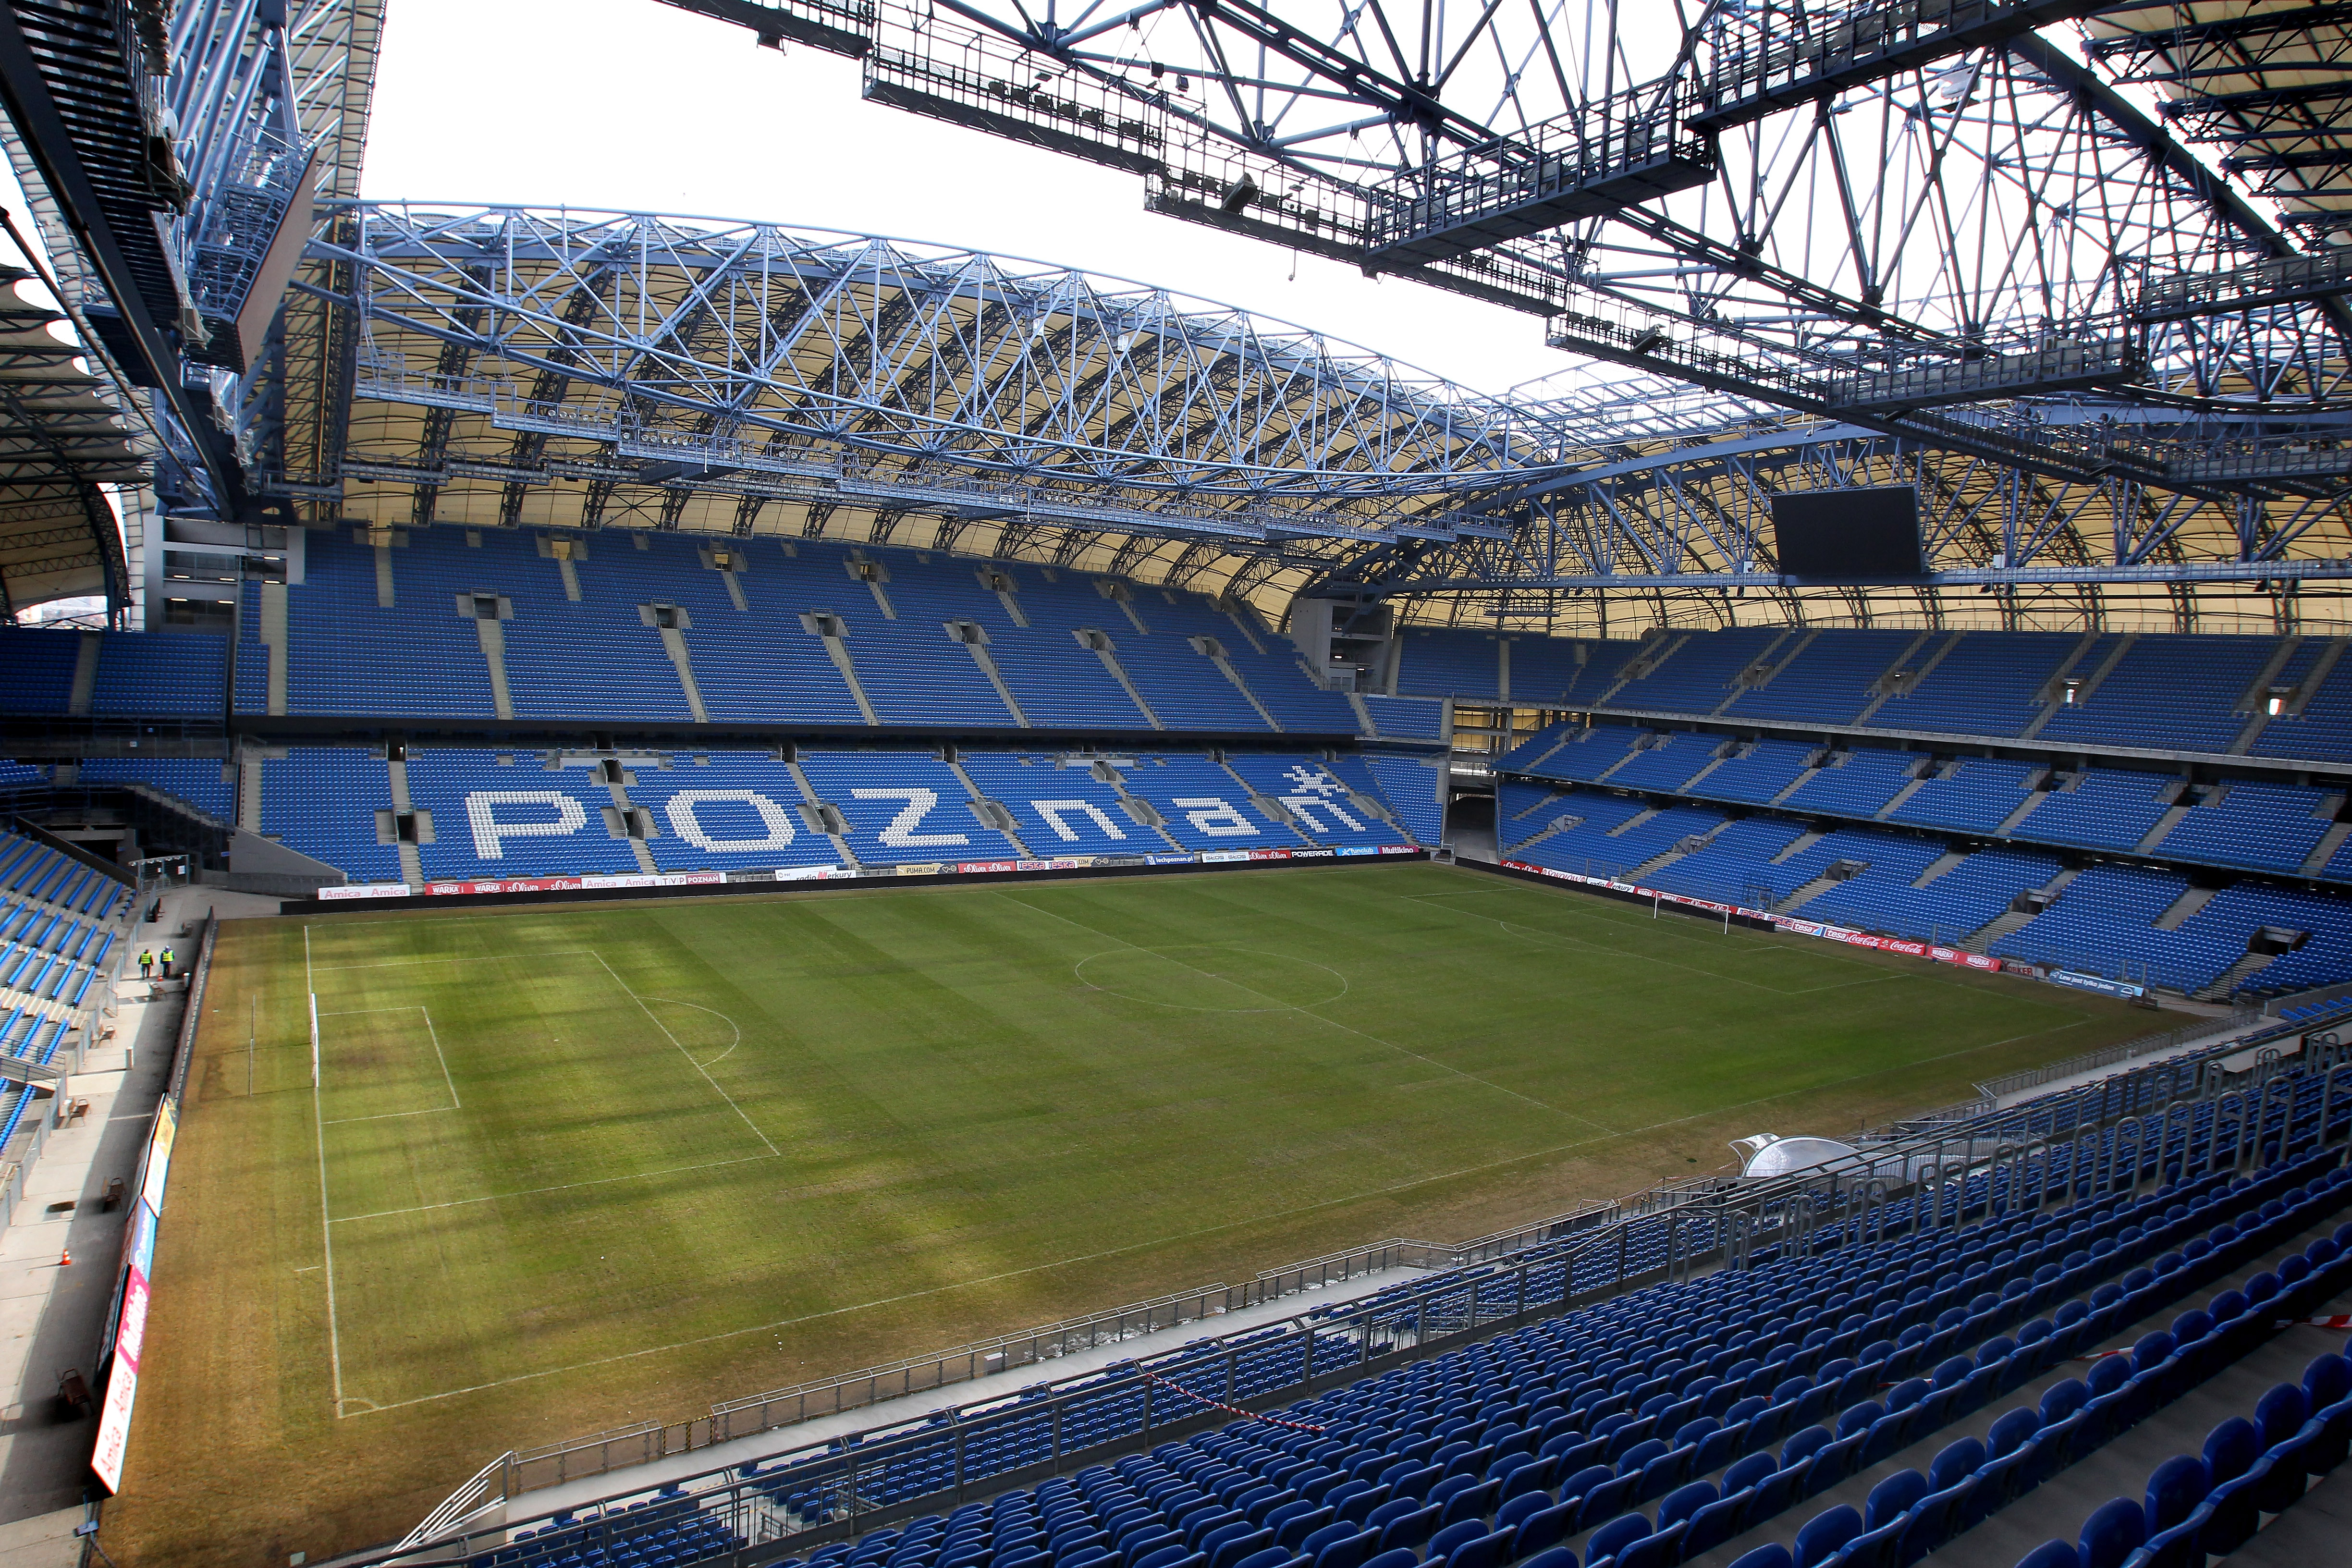 Tre av grupp C:s matcher kommer gå i Poznan. Här spelar Warta Poznan och Lech Poznan till vardags.